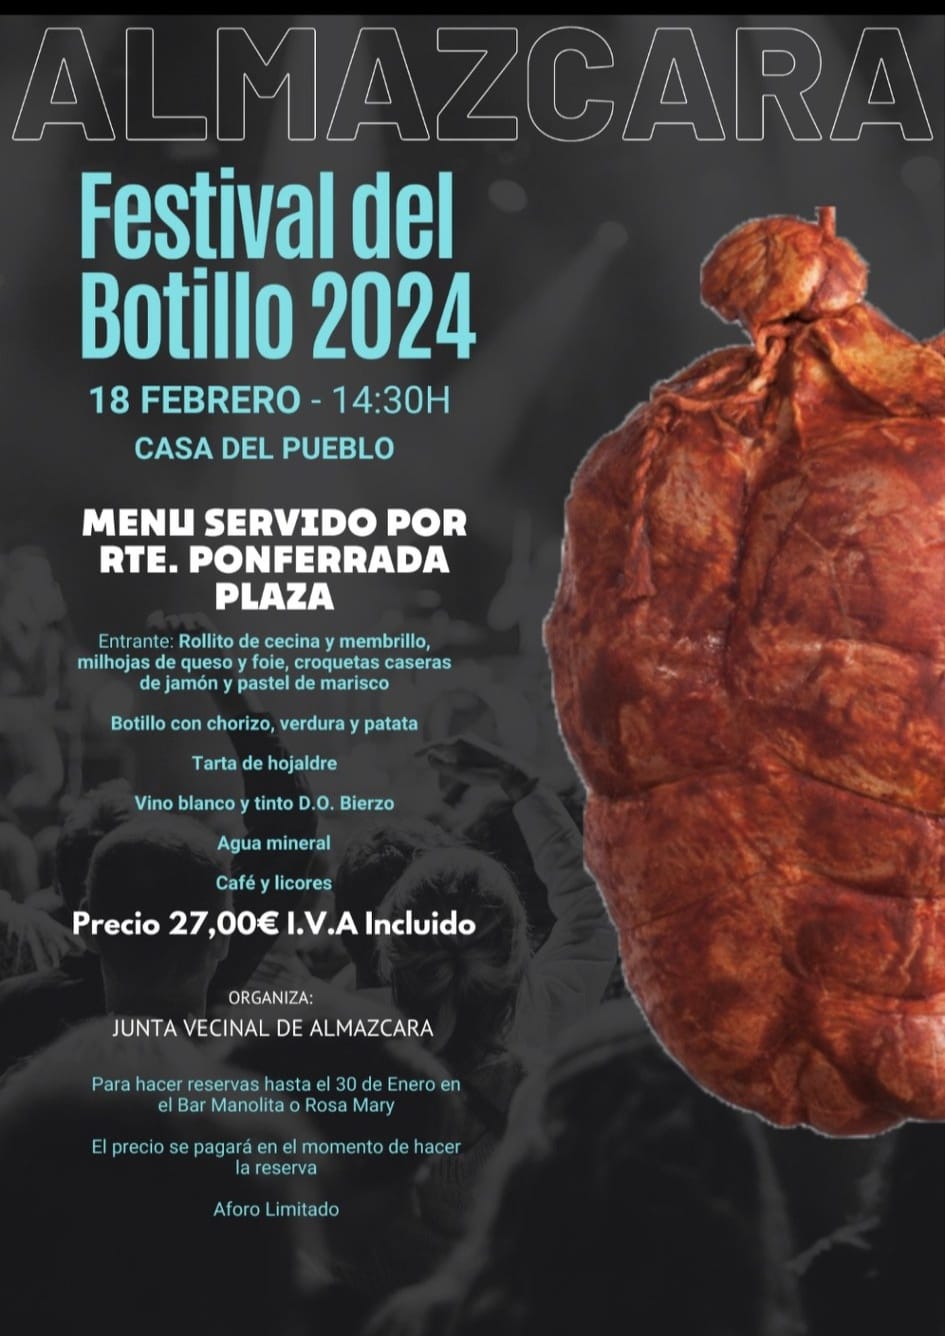 La Junta Vecinal de Almázcara organiza un festival del Botillo el próximo 18 de febrero 2